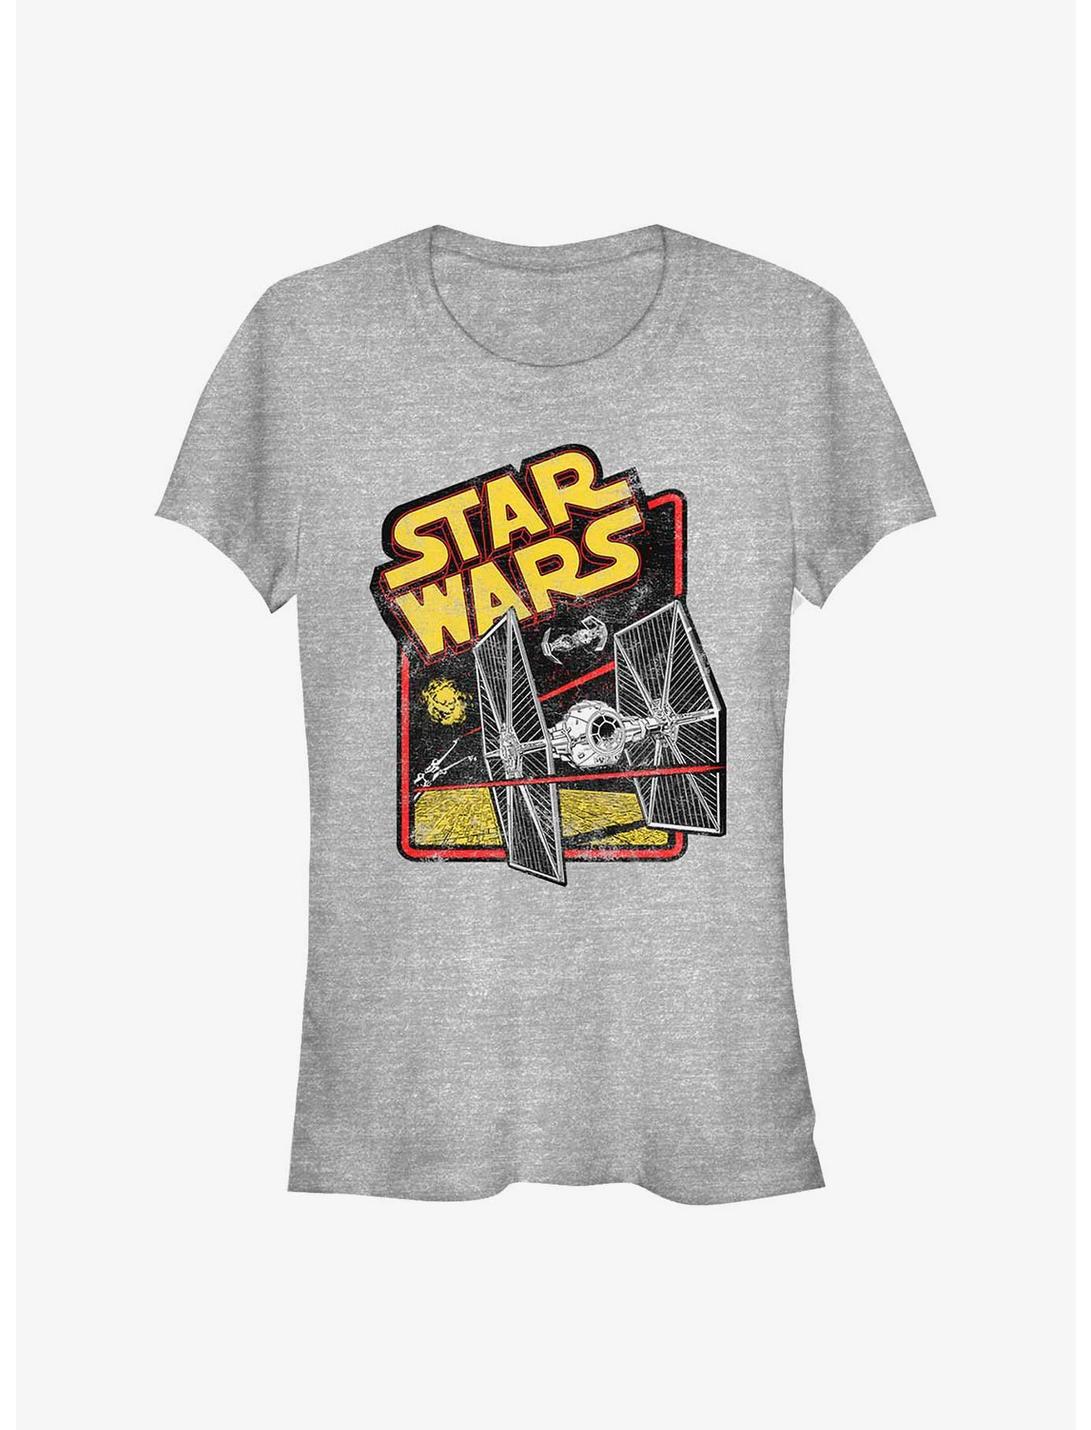 Star Wars Fighter Logo Girls T-Shirt, ATH HTR, hi-res